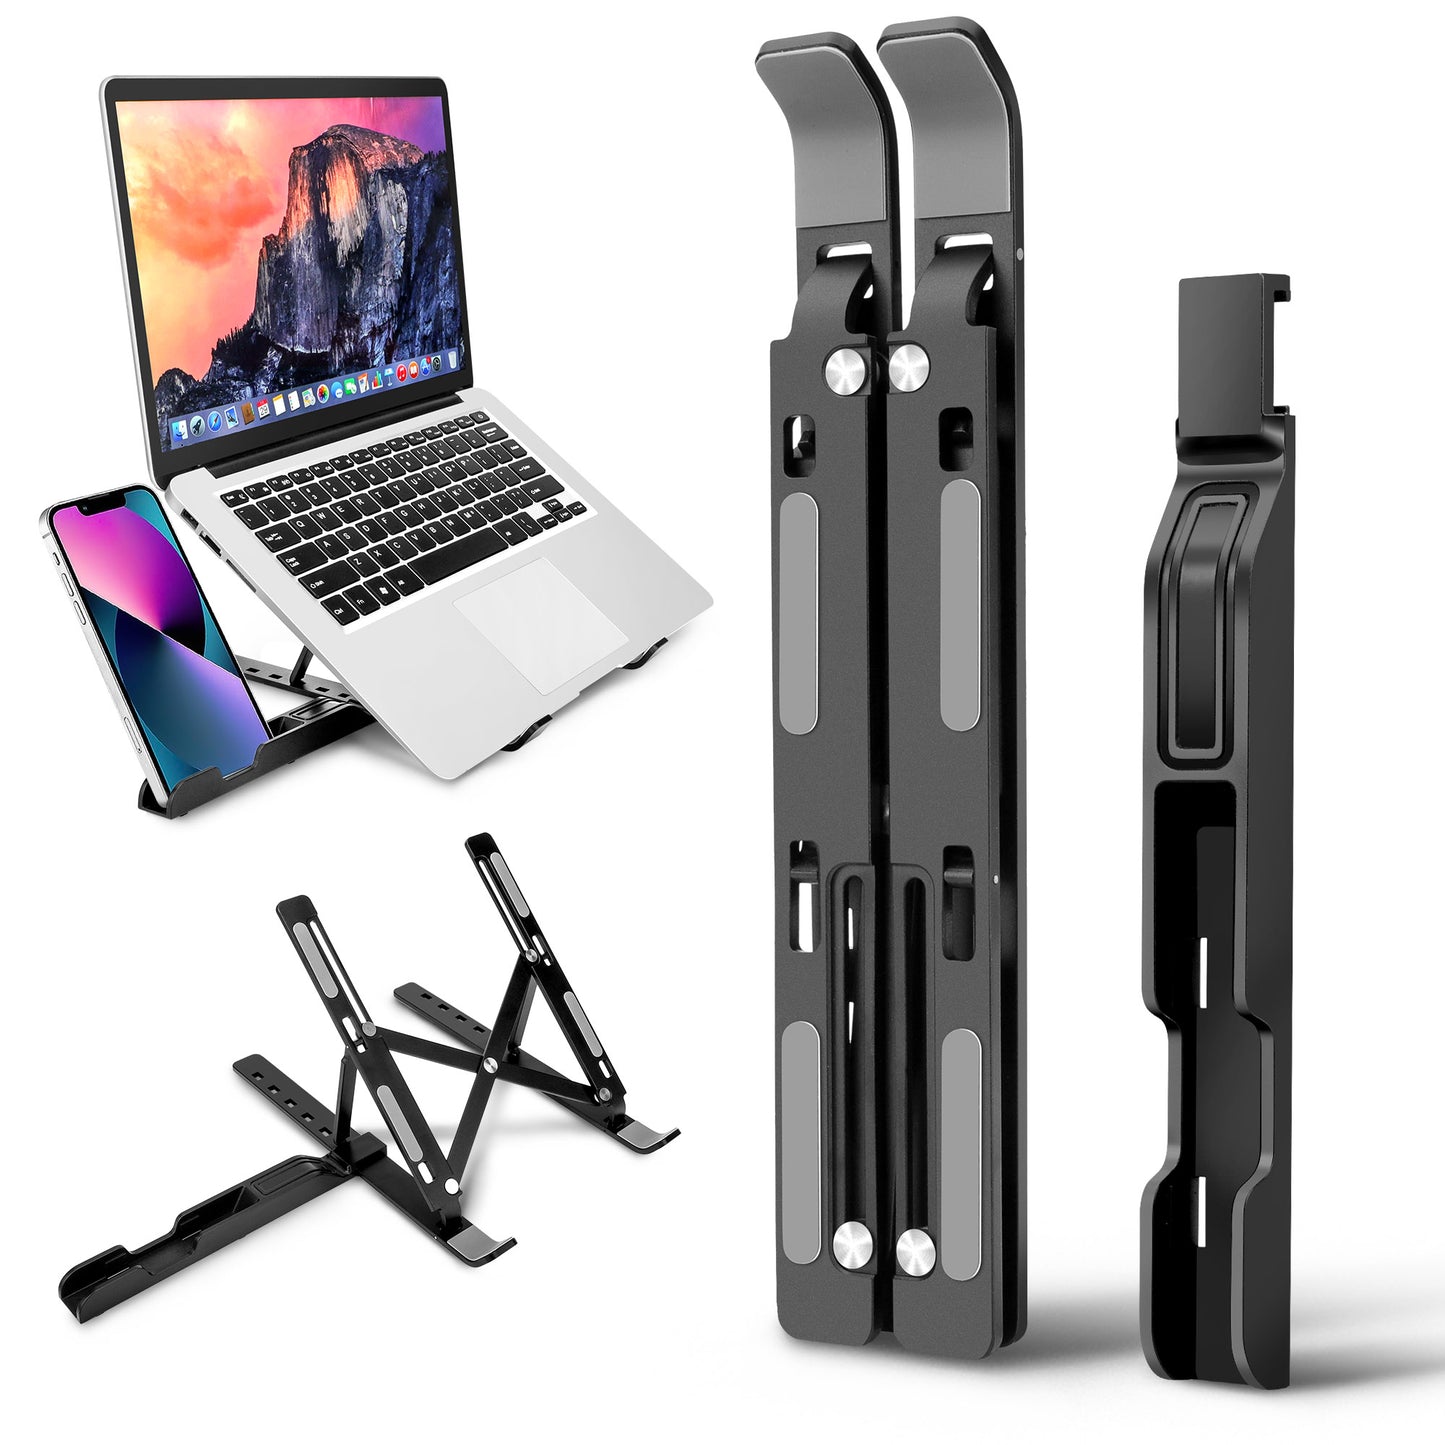 Adjustable Laptop Stand - Ergonomic, Foldable, Cooling Design